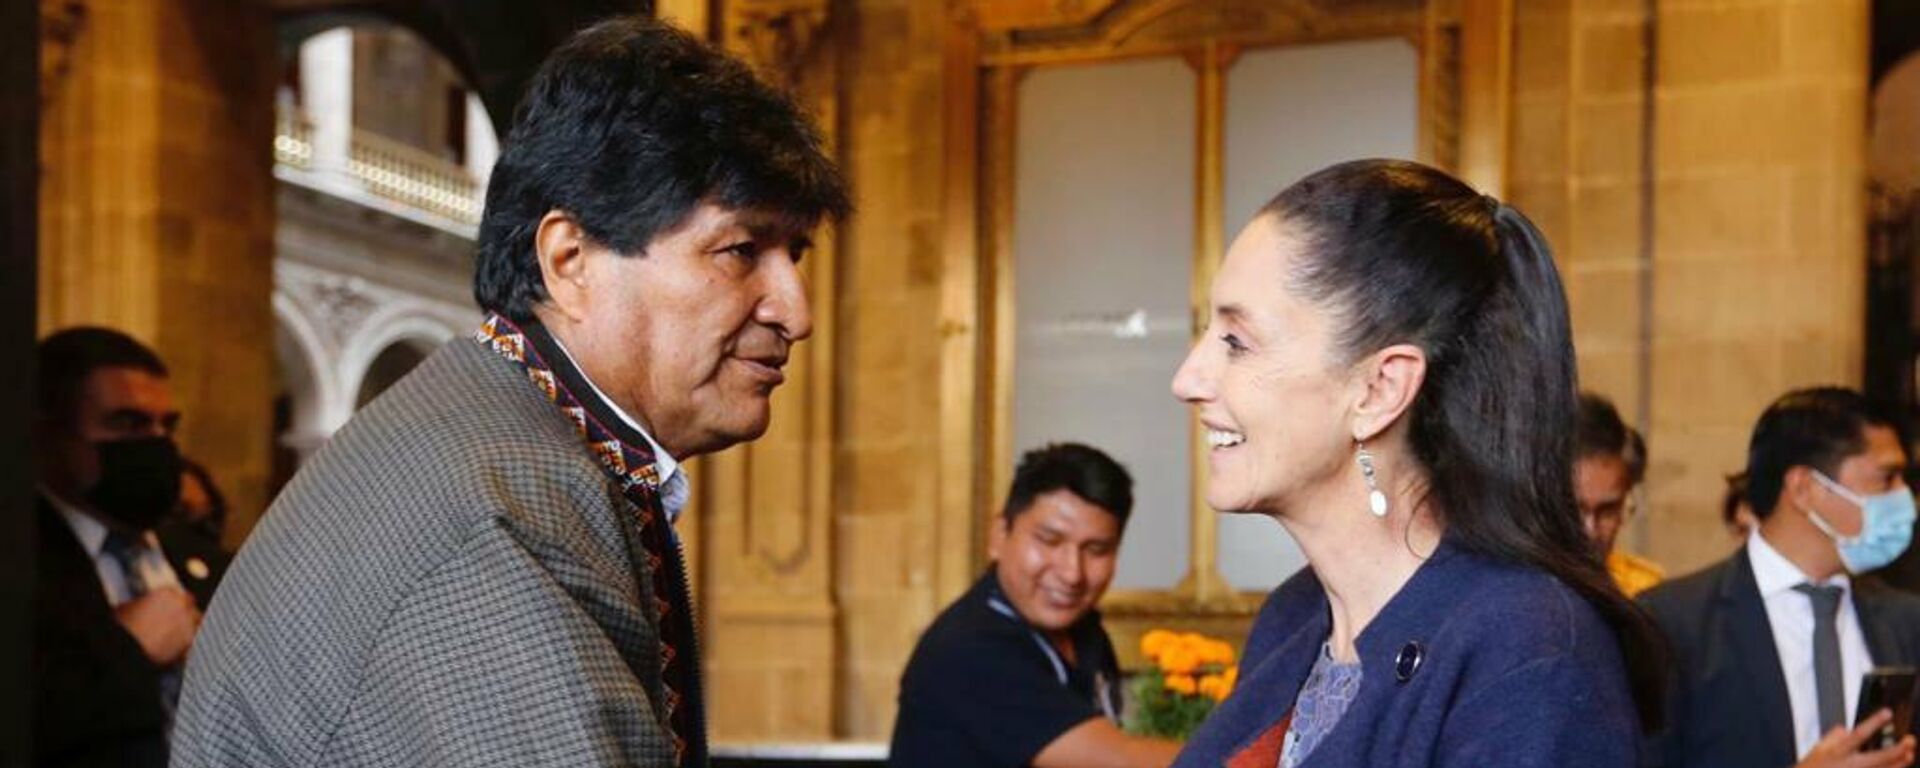 Evo Morales, expresidente de Bolivia, y Claudia Sheinbaum, jefa de gobierno de CDMX - Sputnik Mundo, 1920, 22.10.2021